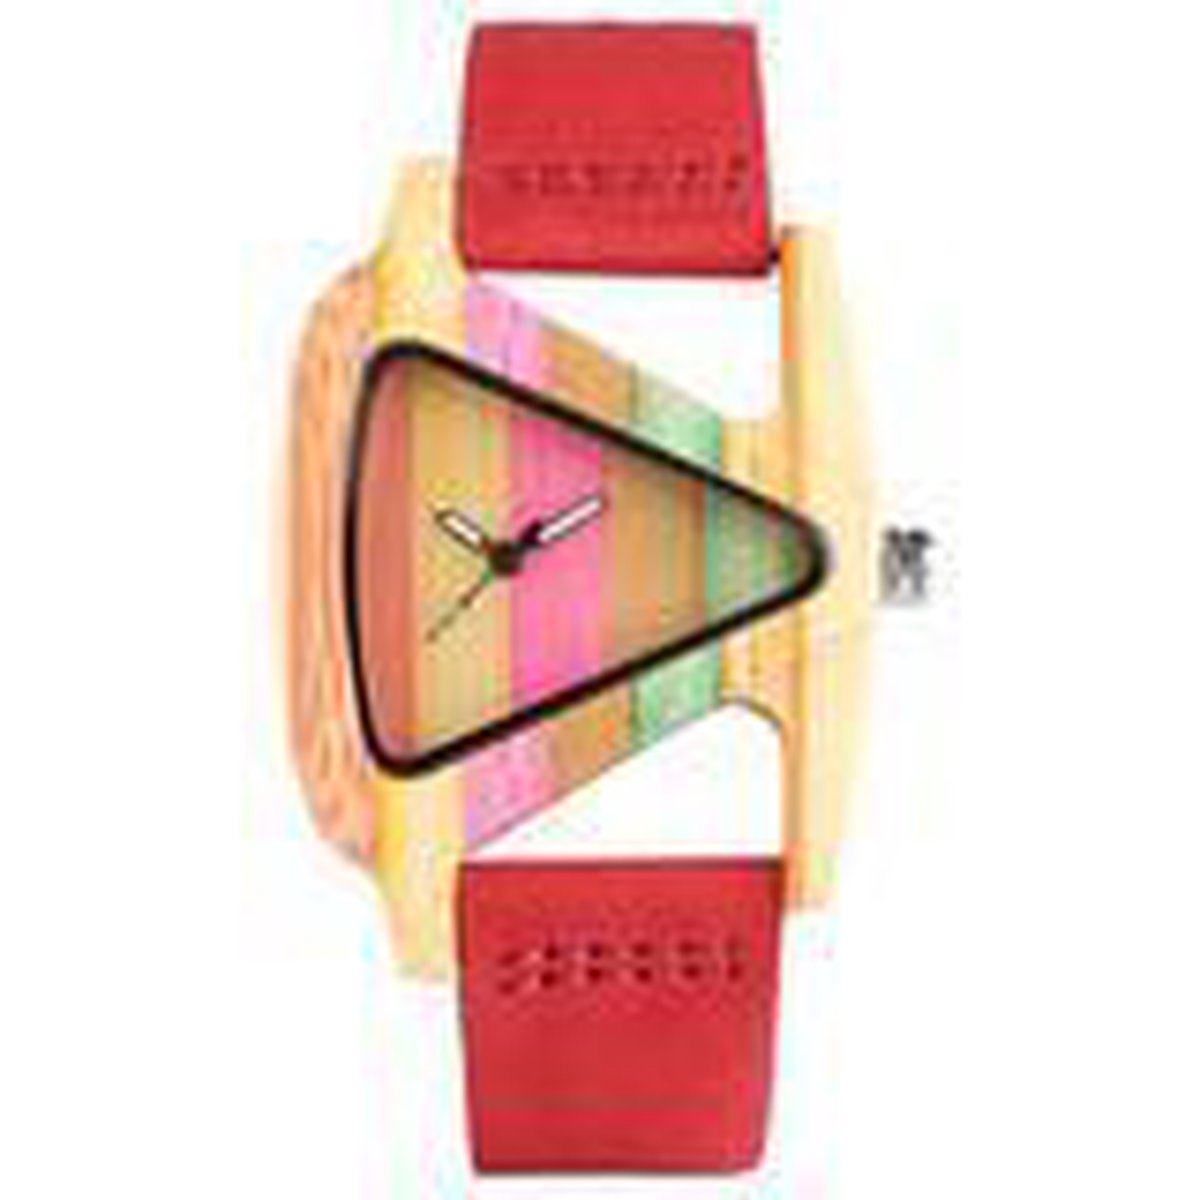 Houten horloge met rode leren band driehoekvormig